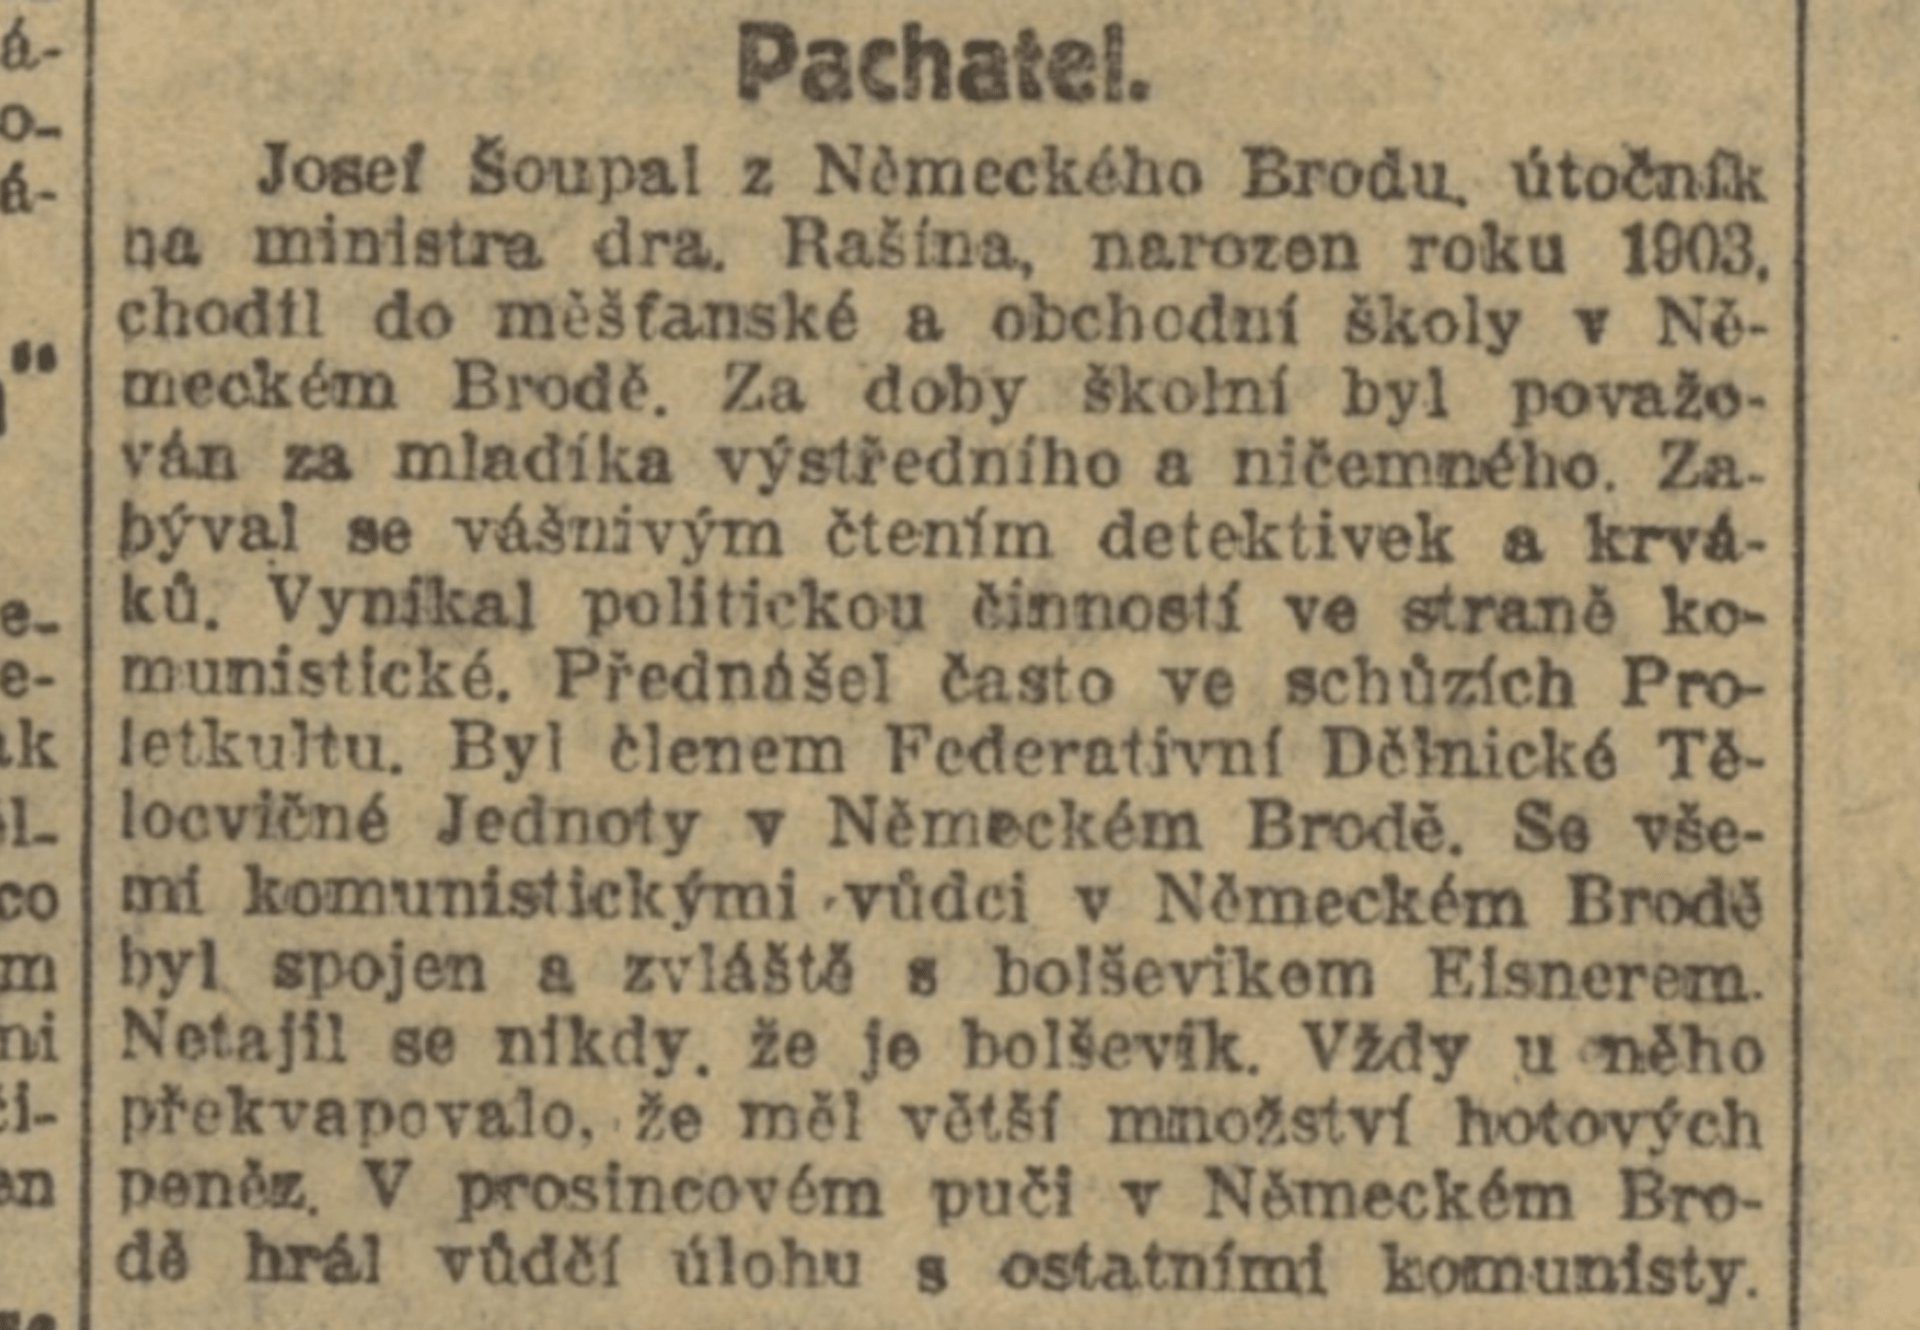 Národní listy o pachateli, 6. ledna 1923. Zdroj Národní digitální knihovna Kramerius.